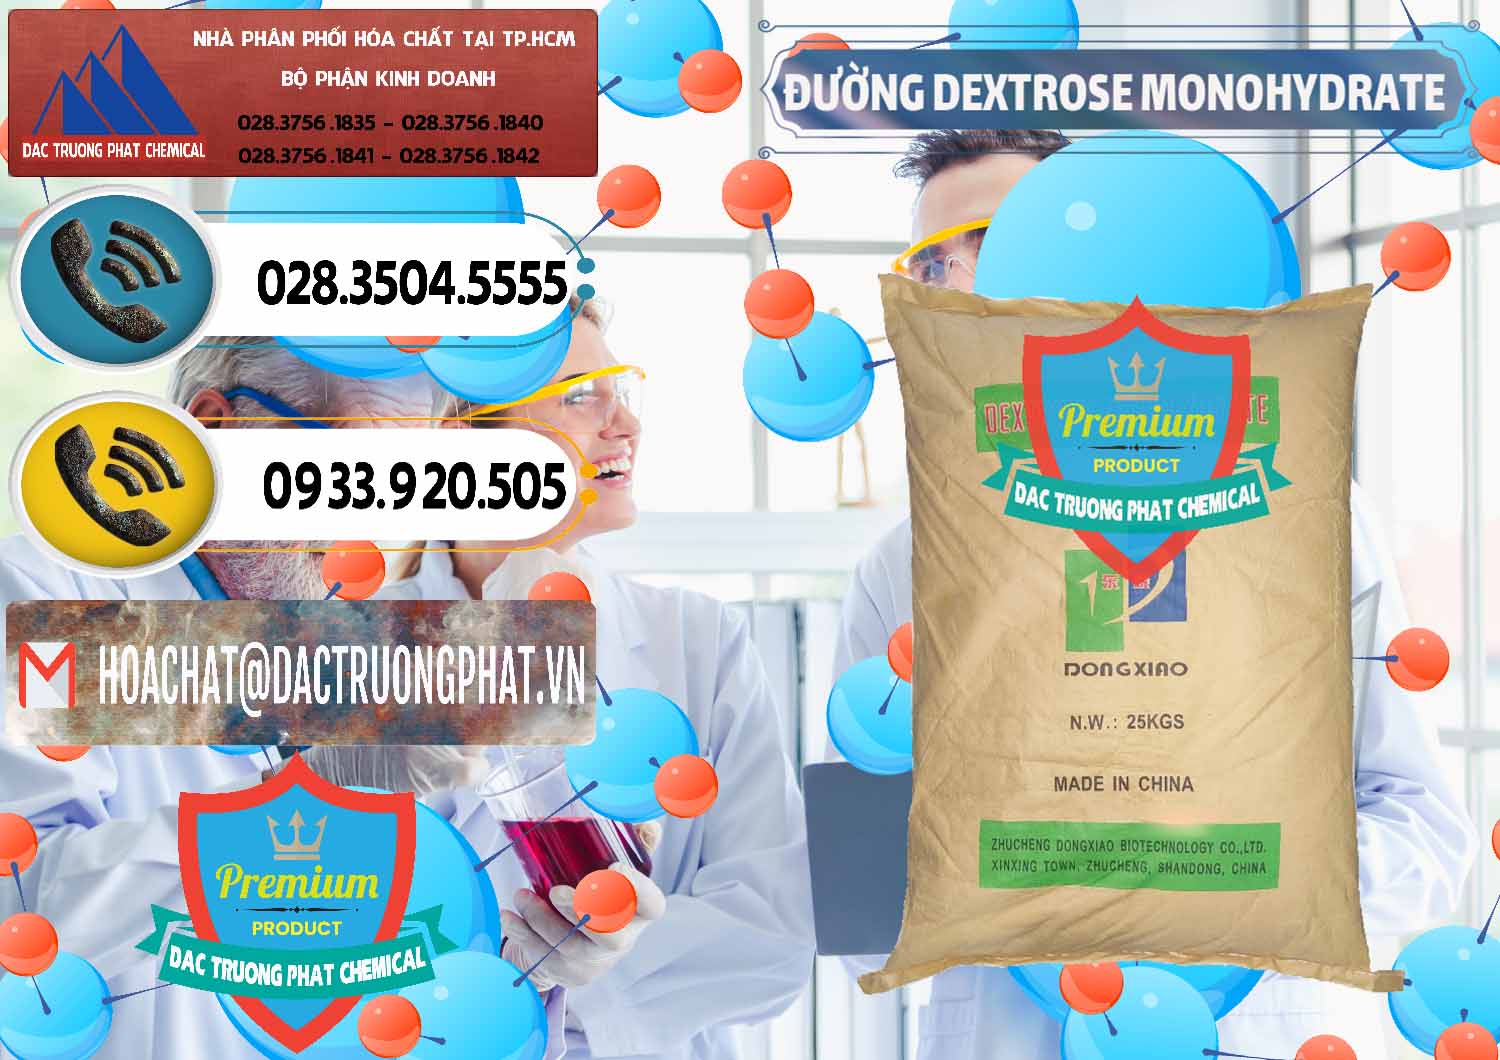 Cty bán và cung ứng Đường Dextrose Monohydrate Food Grade Dongxiao Trung Quốc China - 0063 - Công ty nhập khẩu ( phân phối ) hóa chất tại TP.HCM - hoachatdetnhuom.vn